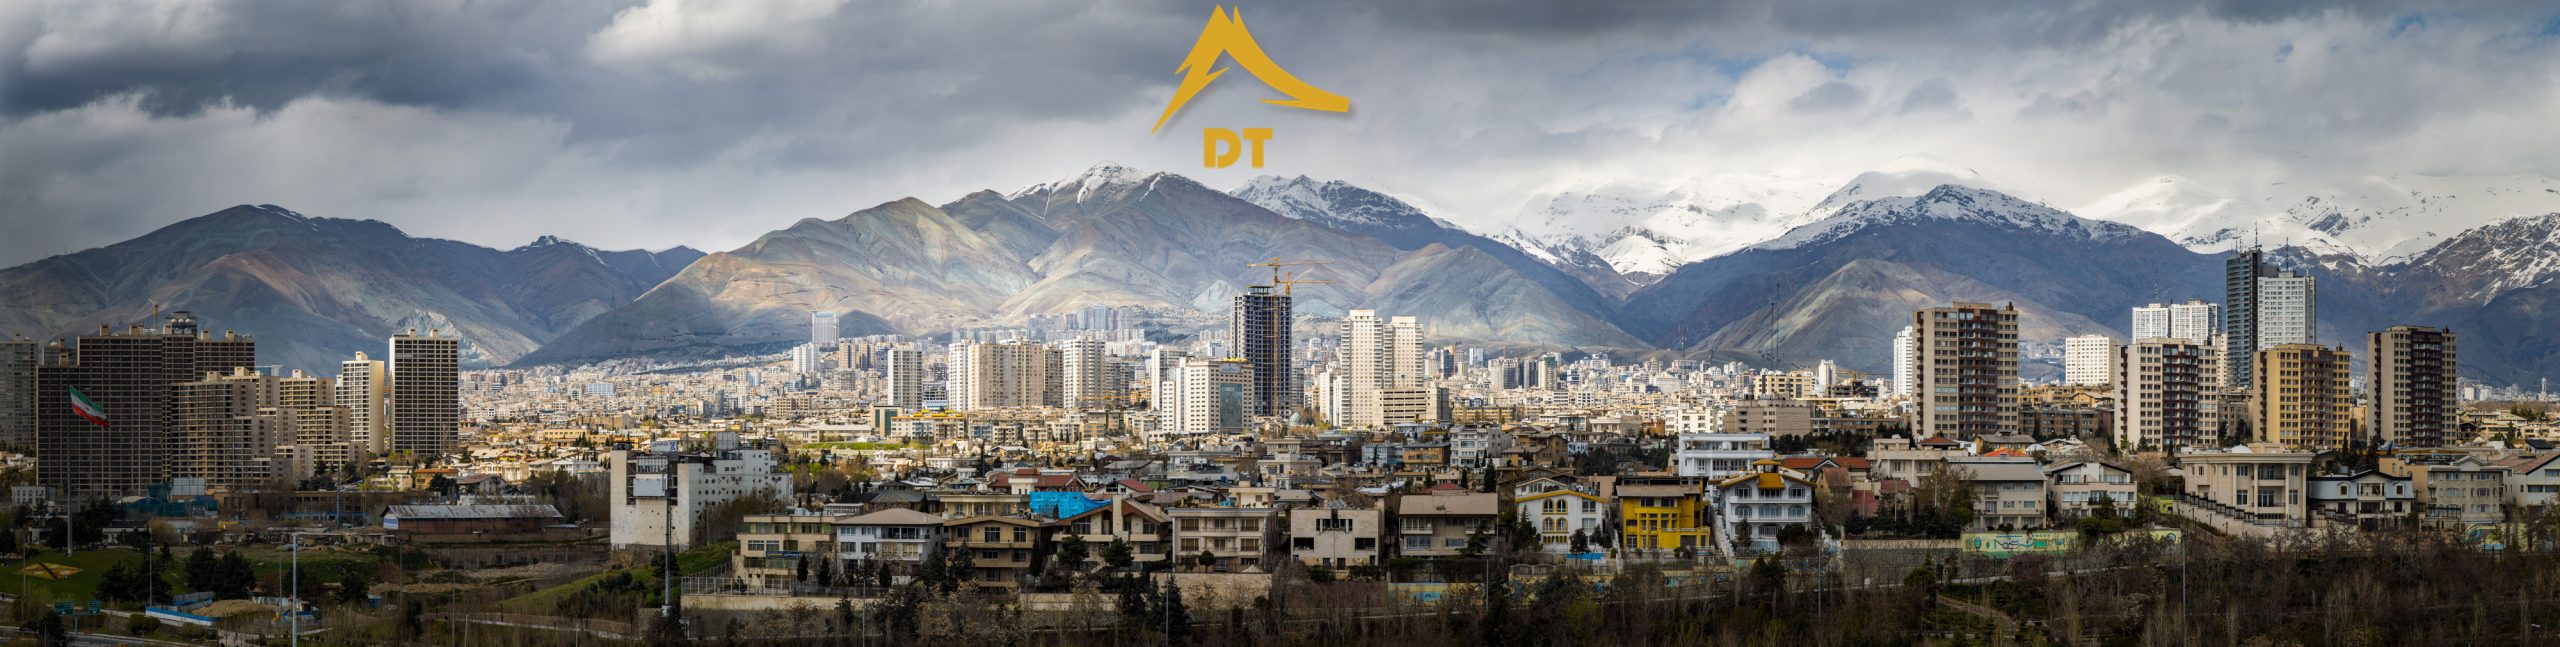 ساخت مشارکتی در تهران